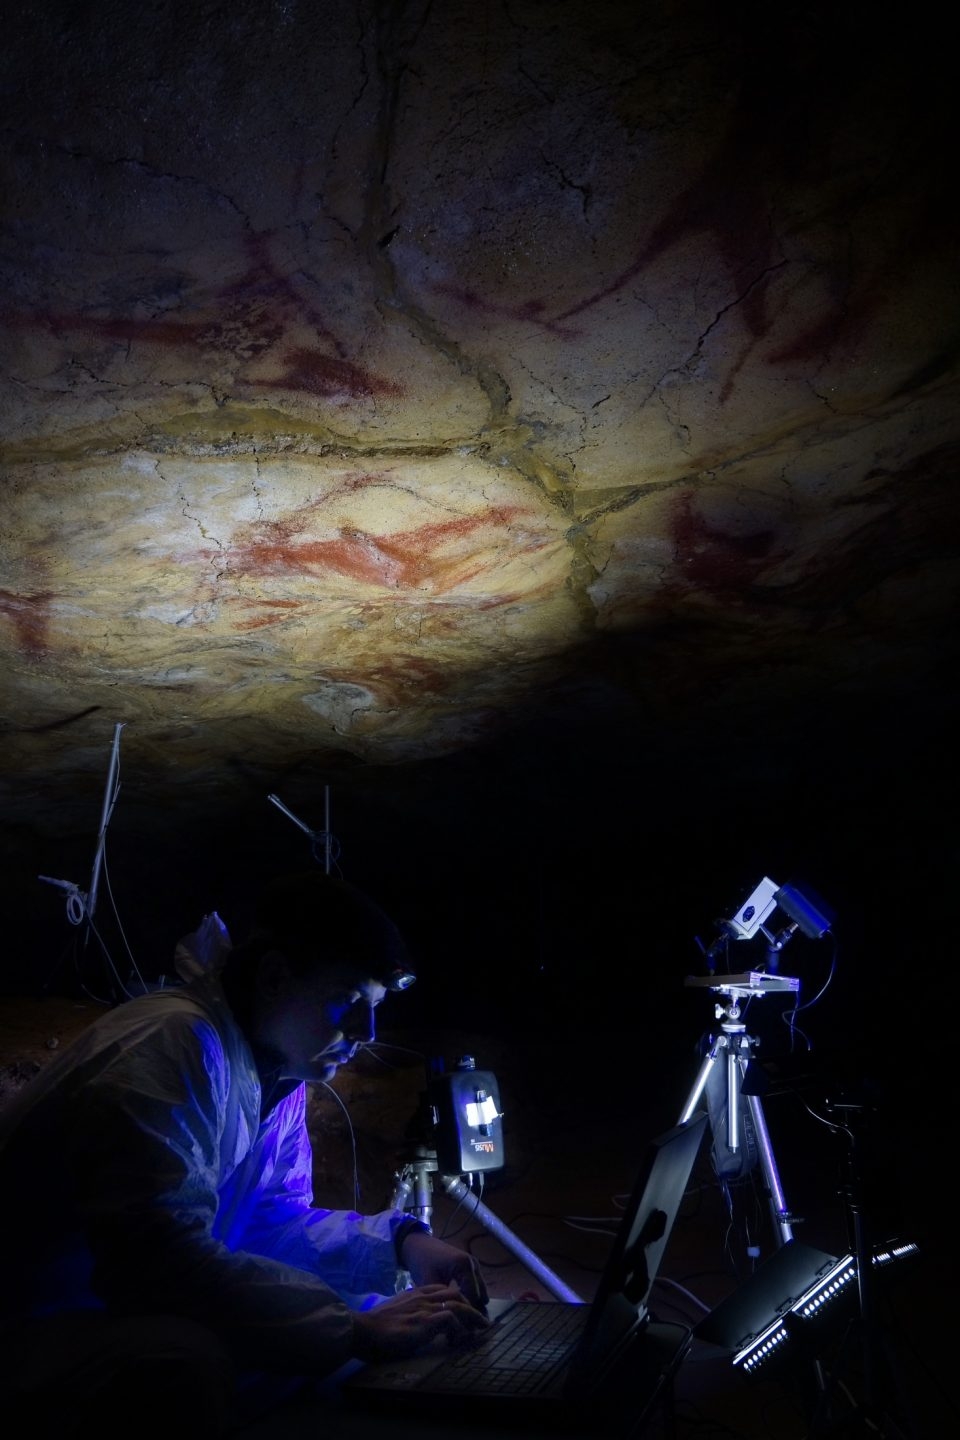 Cueva de Altamira